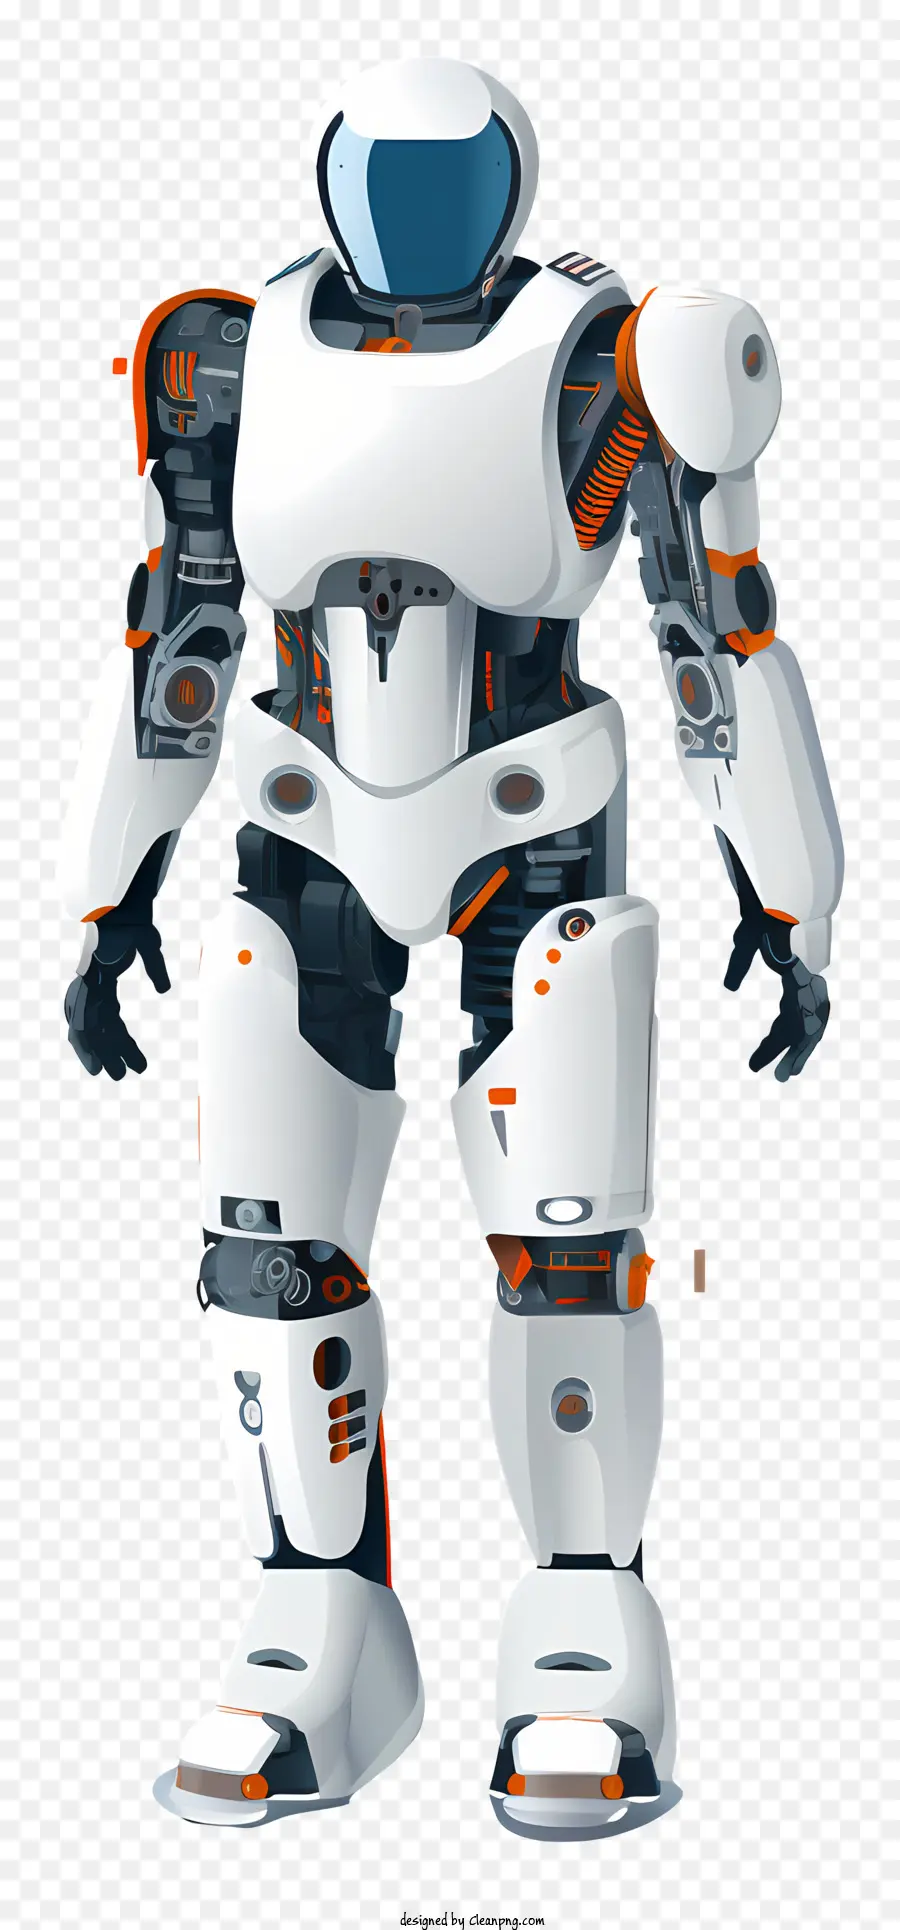 robot hình người màu trắng và màu cam xuất hiện cơ học bạc và cơ thể màu cam hai mắt màu cam - Robot hình người nghiêm túc với vẻ ngoài cơ học và ăng -ten